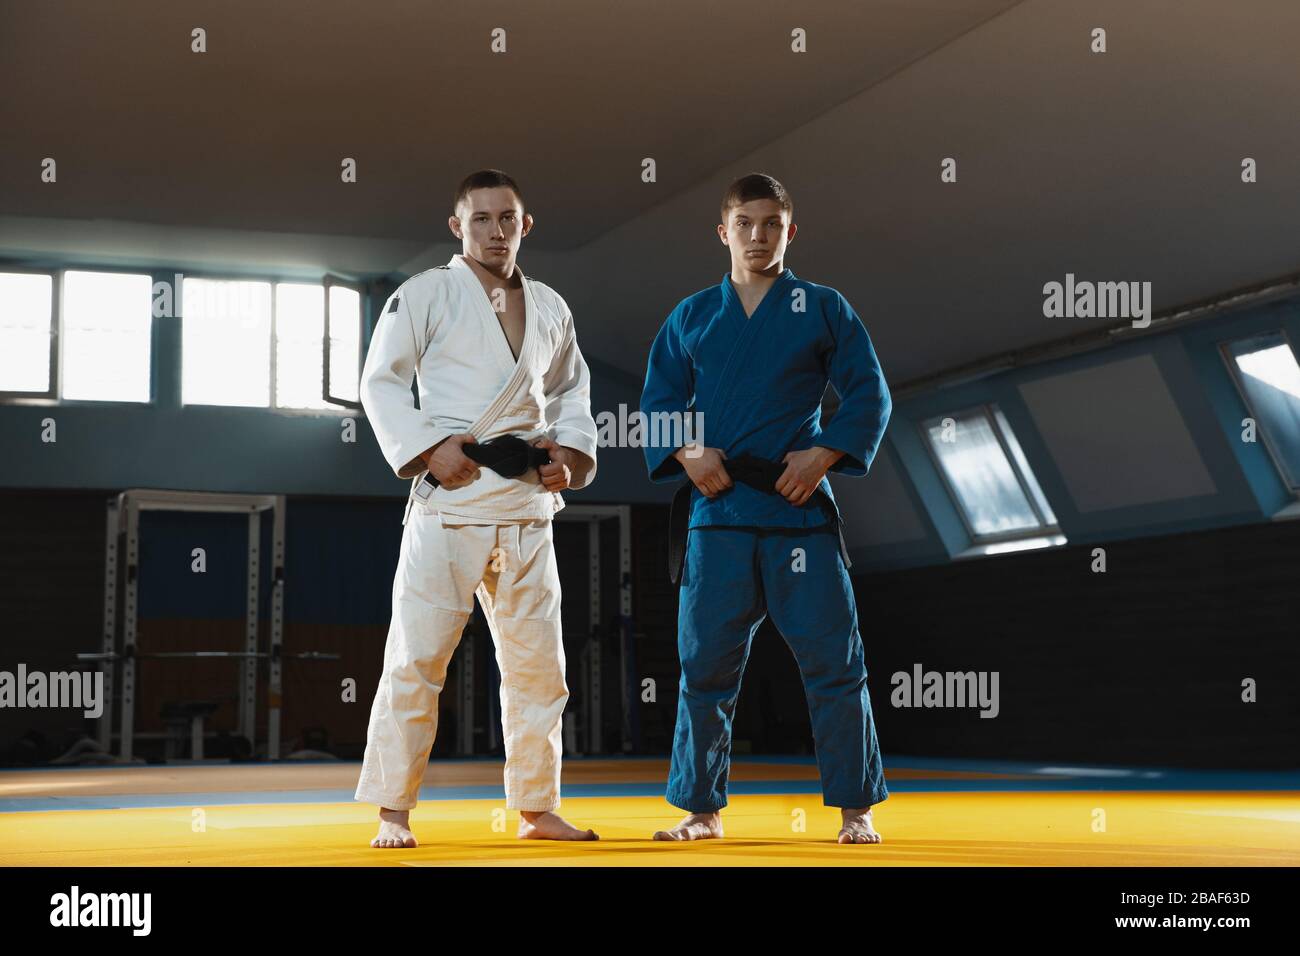 Deux jeunes combattants caucasiens judo en kimono blanc et bleu avec ceintures noires posant confiance dans la salle de gym, forte et saine. Pratiquer des habiletés de combat en arts martiaux. Surmonter, atteindre l'objectif. Banque D'Images